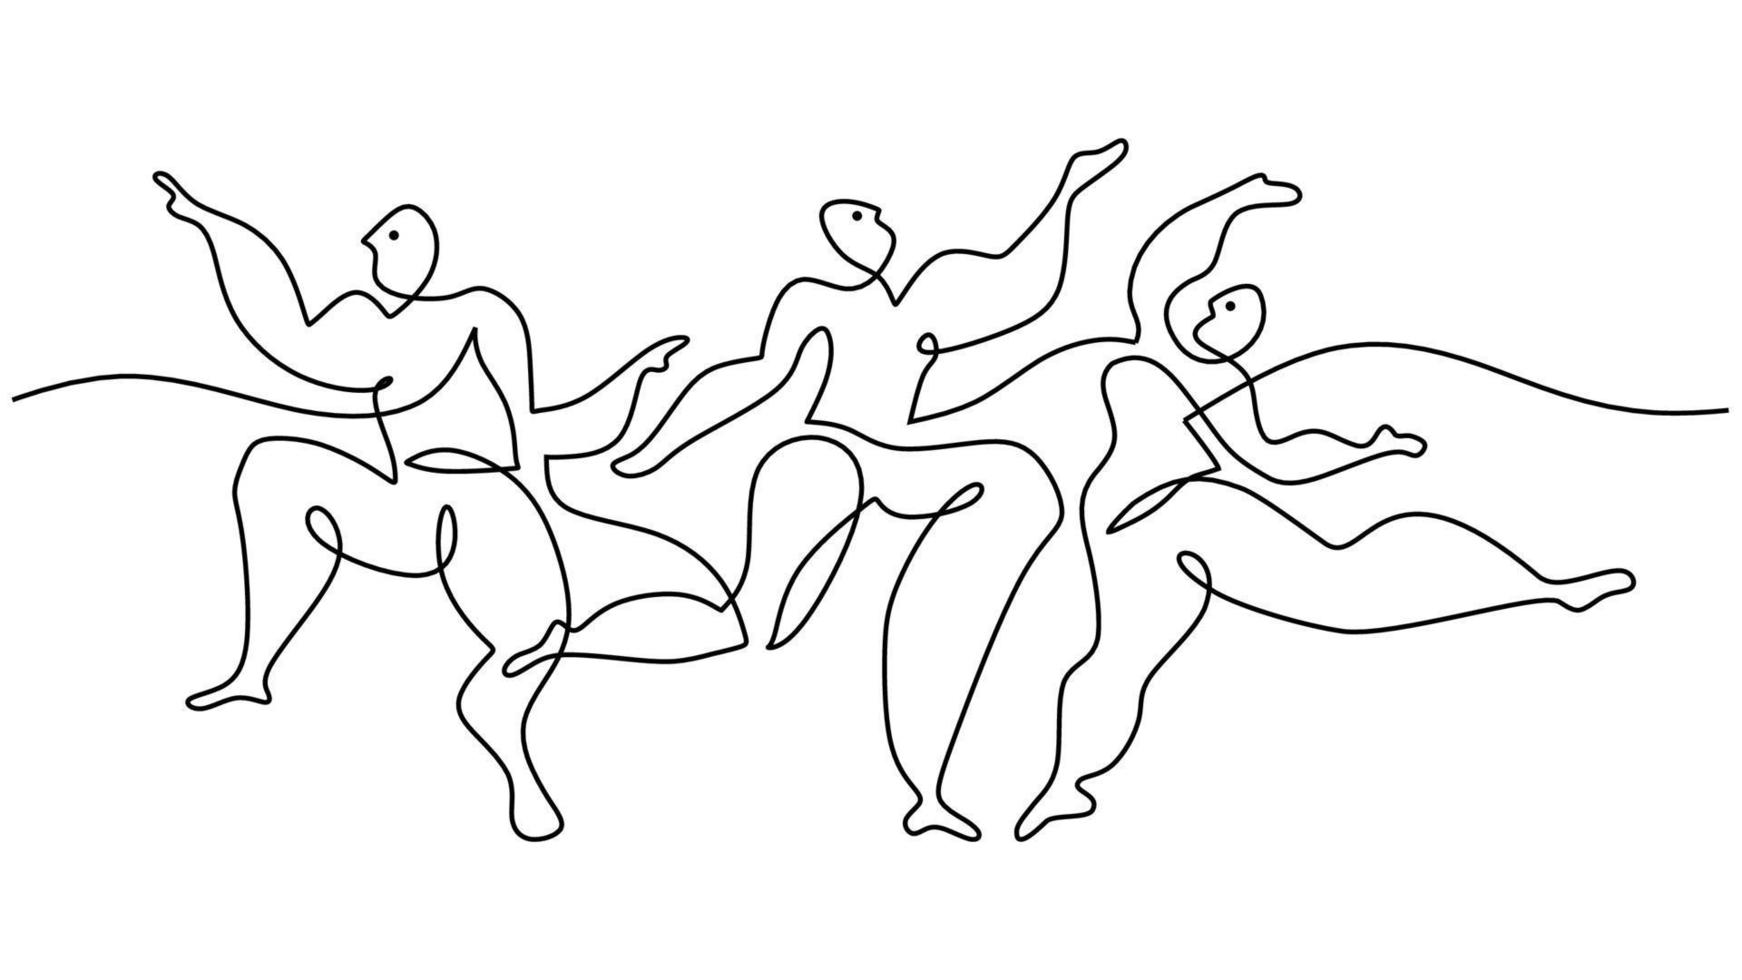 een doorlopend single lijn tekening van dansen mensen picasso. vector